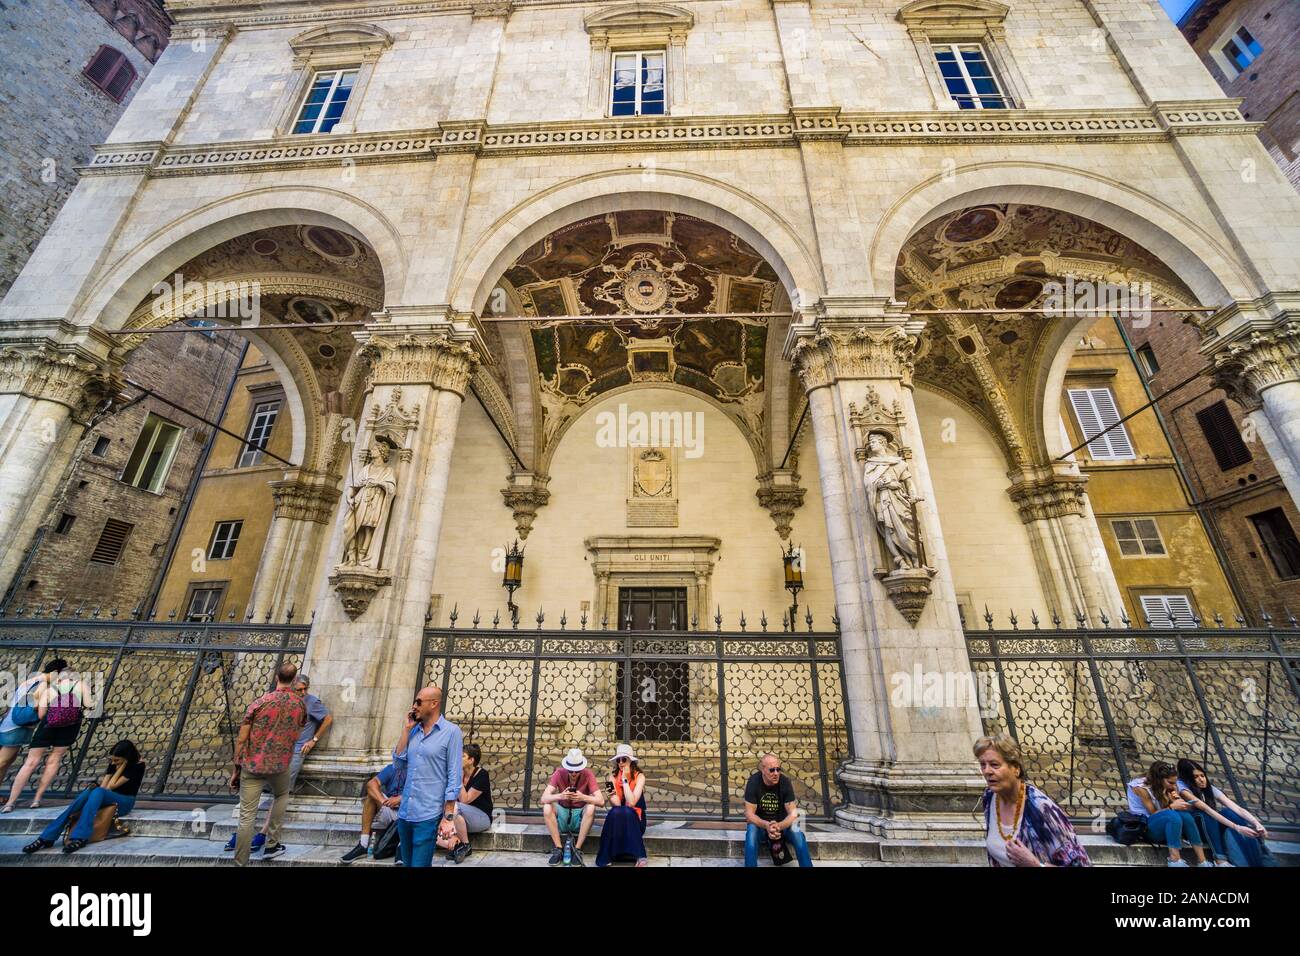 Edificio gotico-rinascimentale della Loggia della Mercanzia nel centro storico di Siena, Toscana, Italia Foto Stock